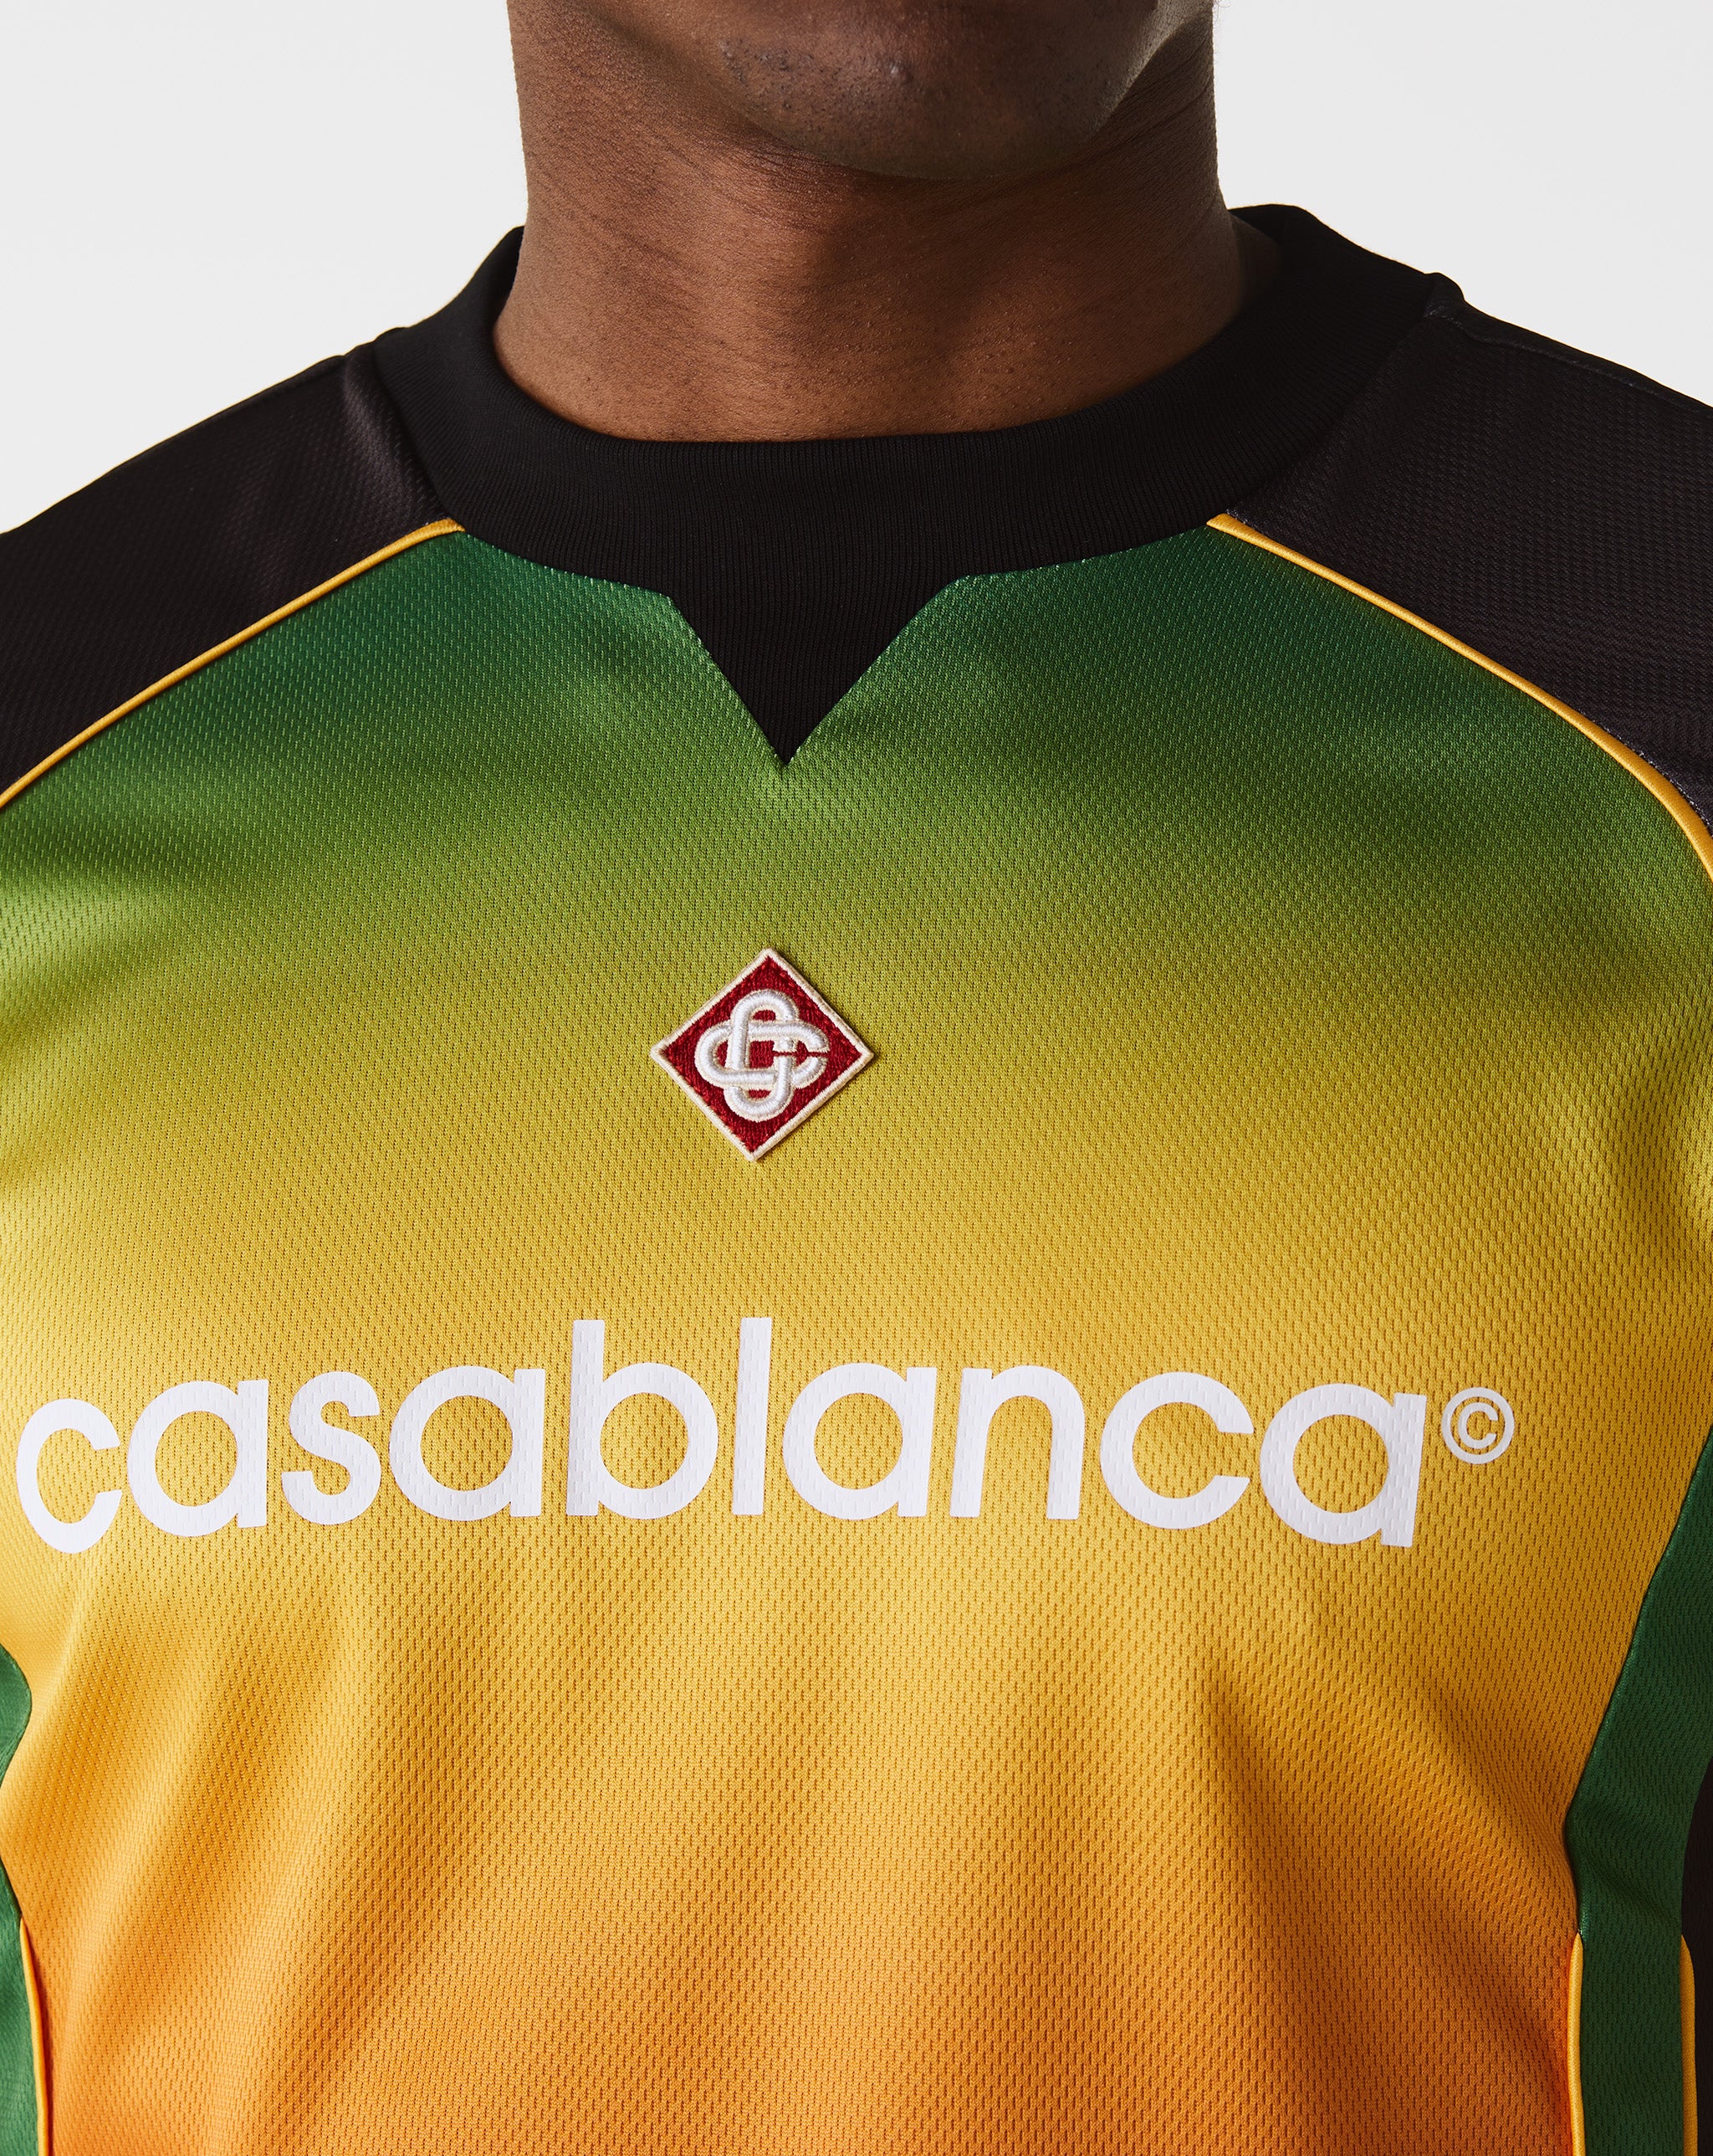 Casablanca Mens Football Shirt  - XHIBITION